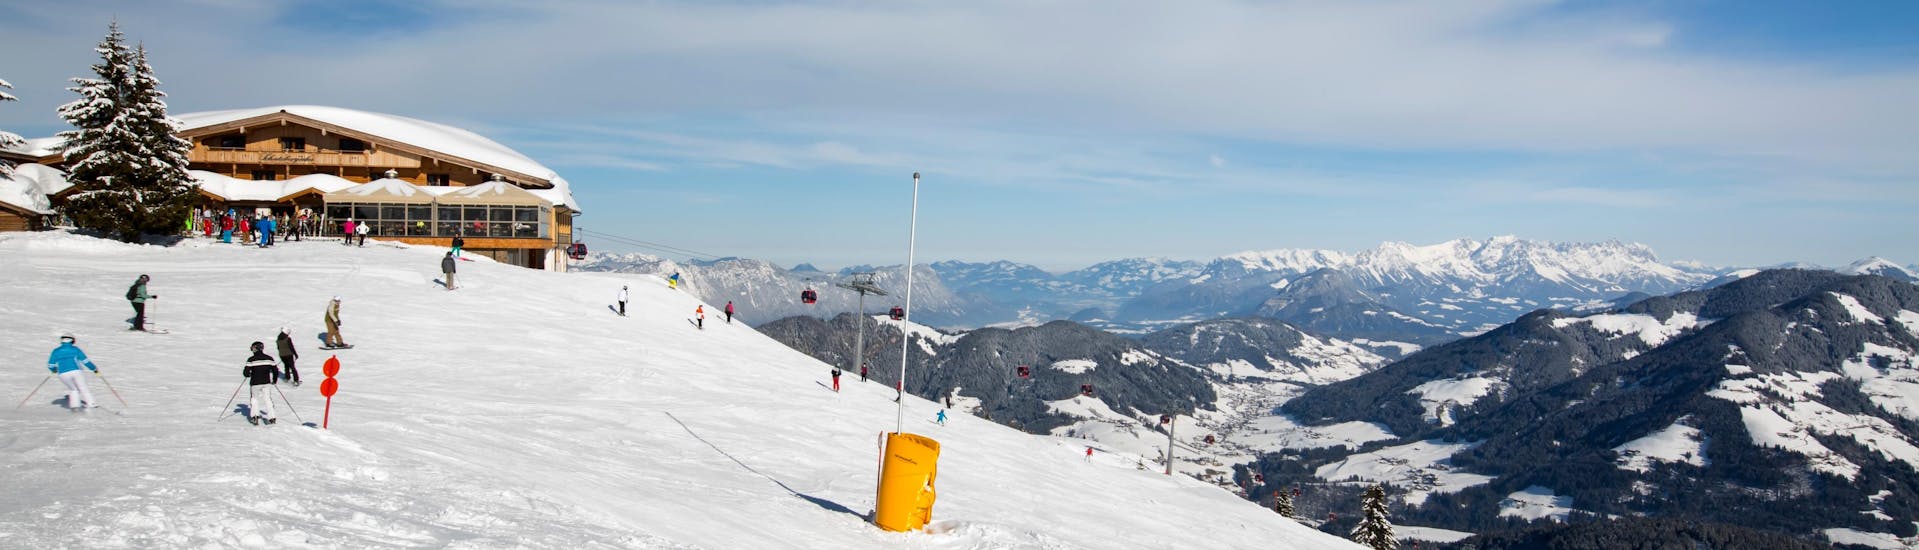 Uitzicht op een kabelbaan tijdens skilessen met skischolen in Niederau.